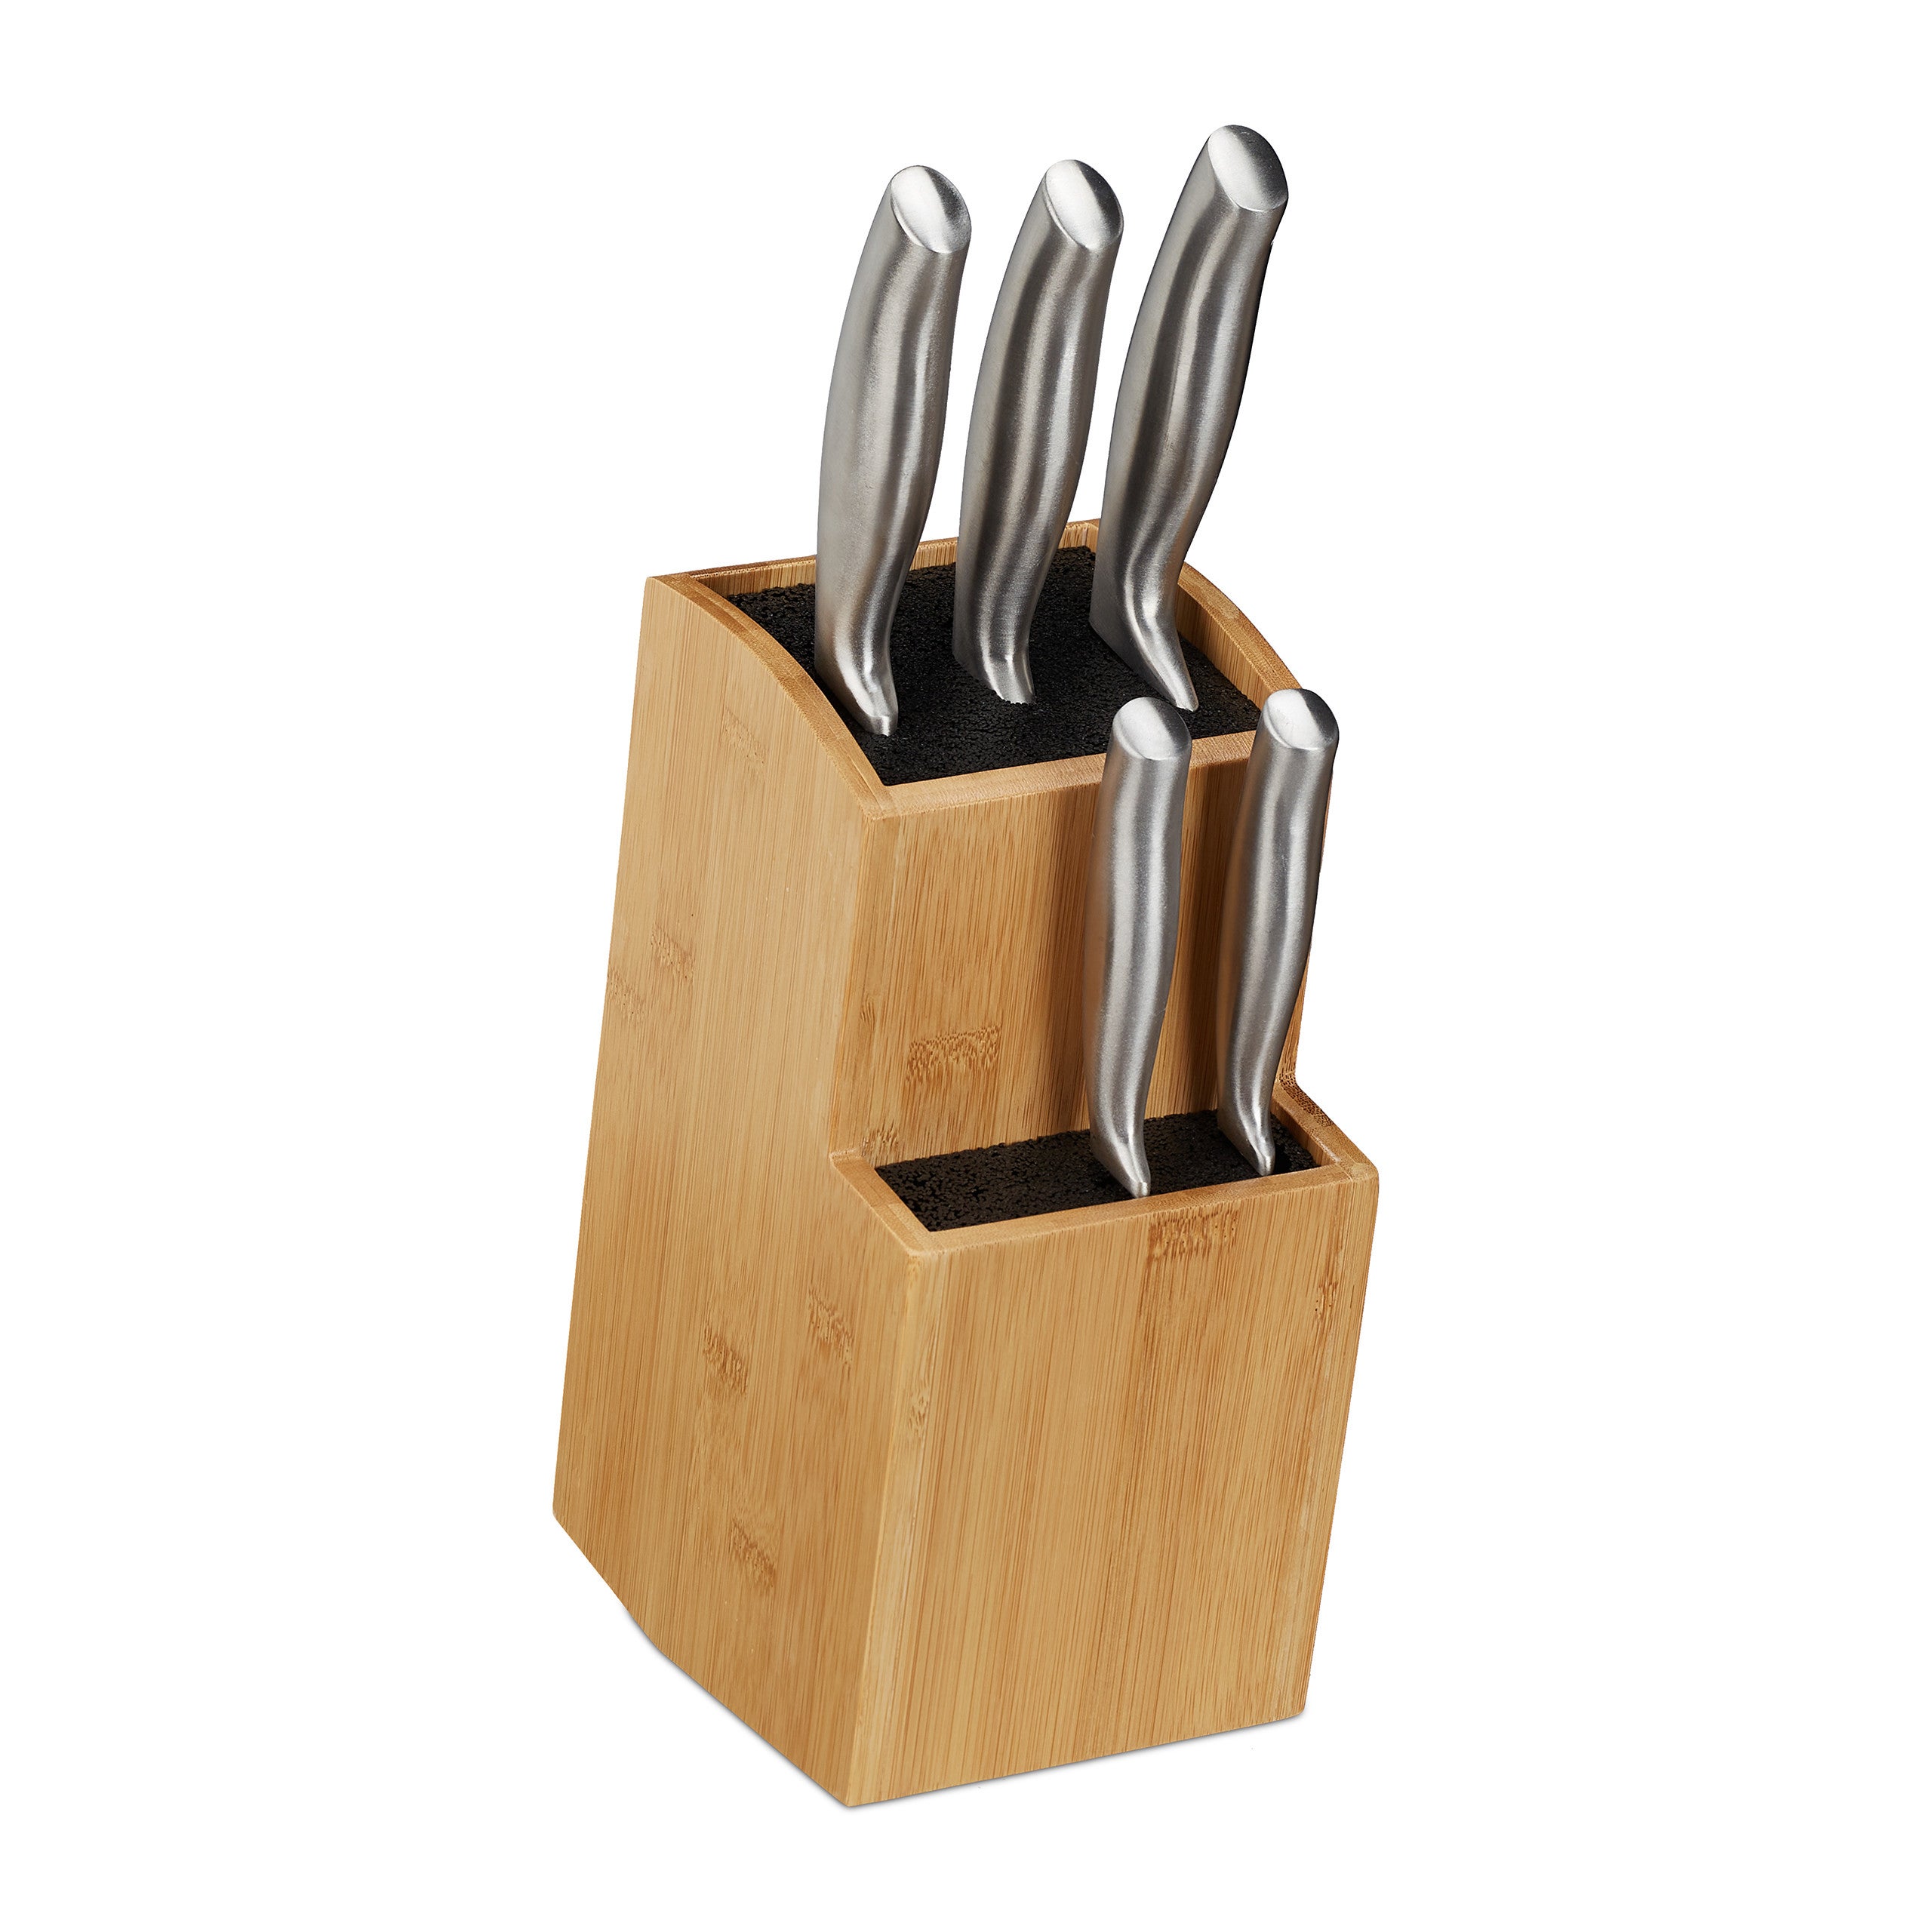 Ceppo per coltelli universale in bambù senza coltelli supporto per organizer per coltelli con porta utensili per bancone da cucina supporto per coltelli da cucina 